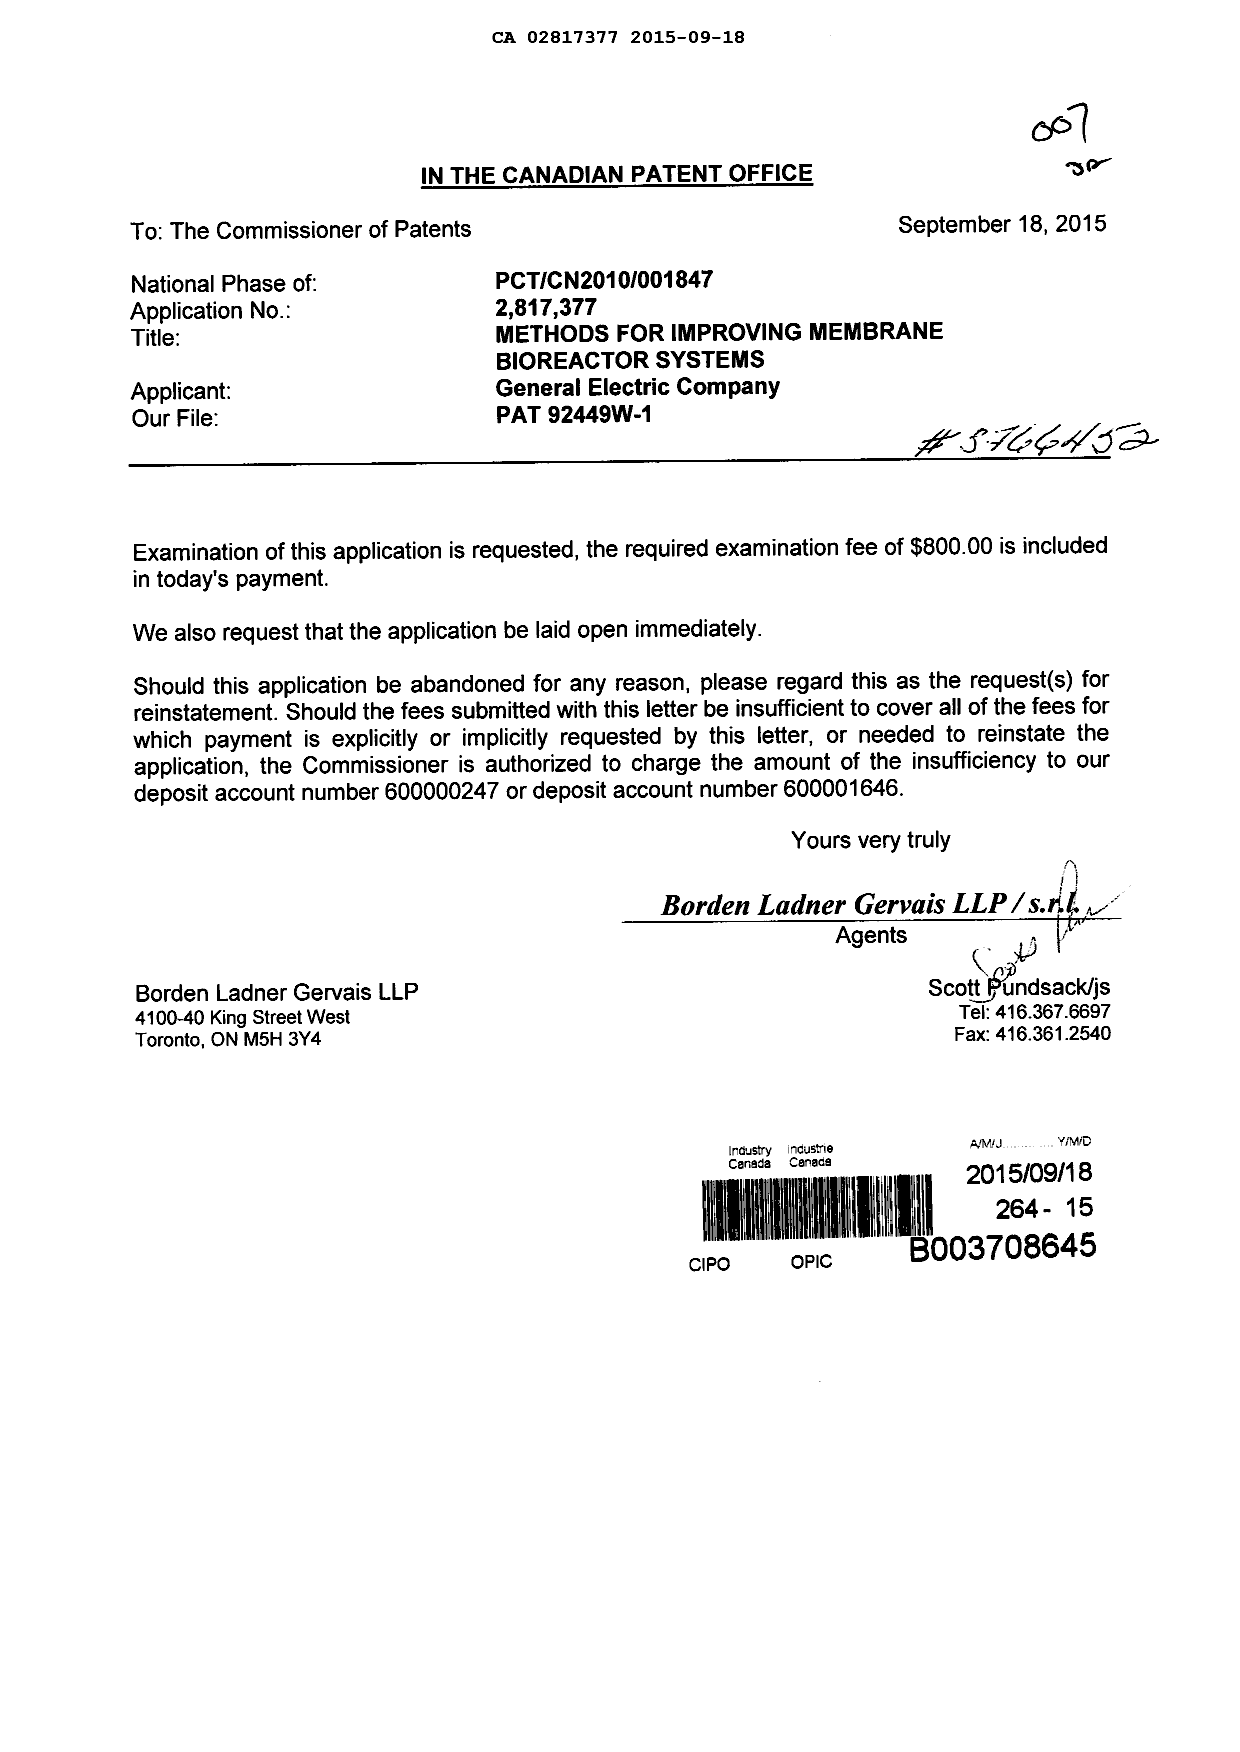 Document de brevet canadien 2817377. Poursuite-Amendment 20141218. Image 1 de 1